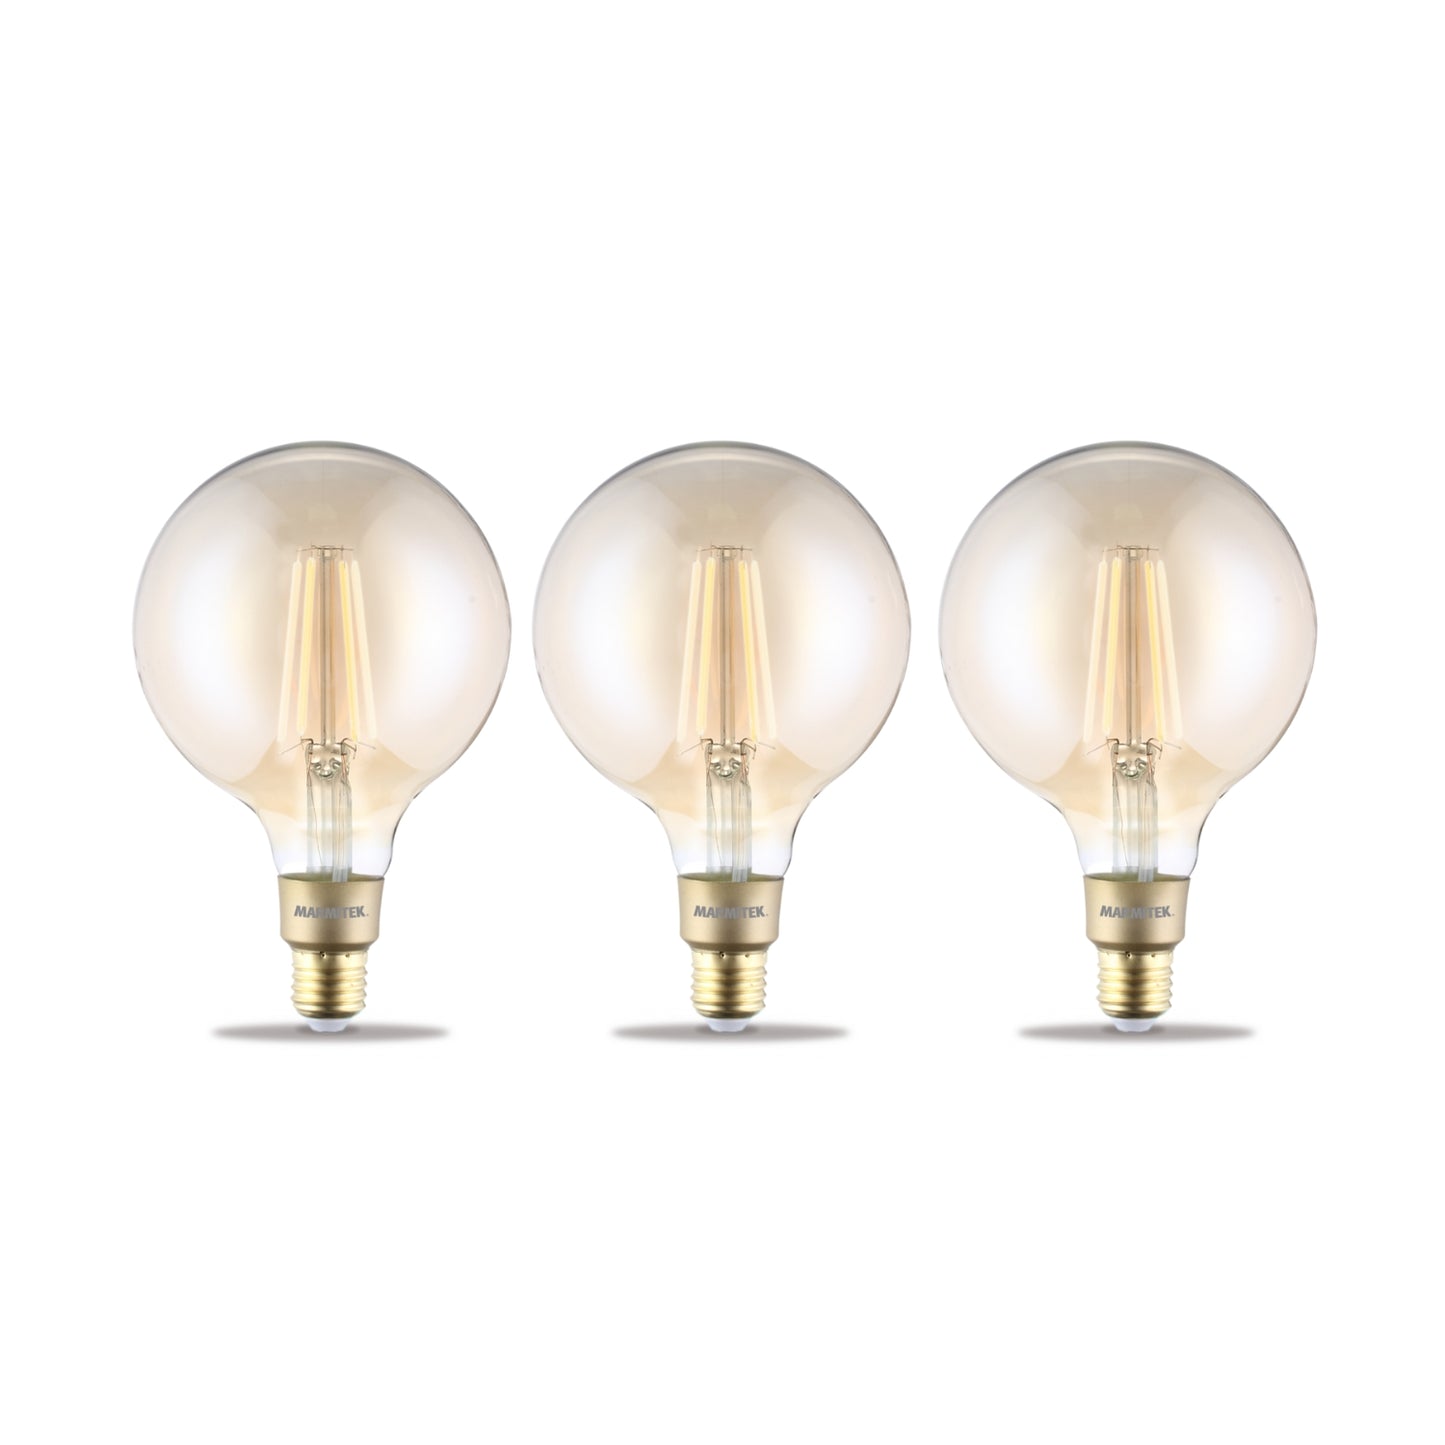 Glow XXLI - Filament Lampe - E27 - Steuerung per App